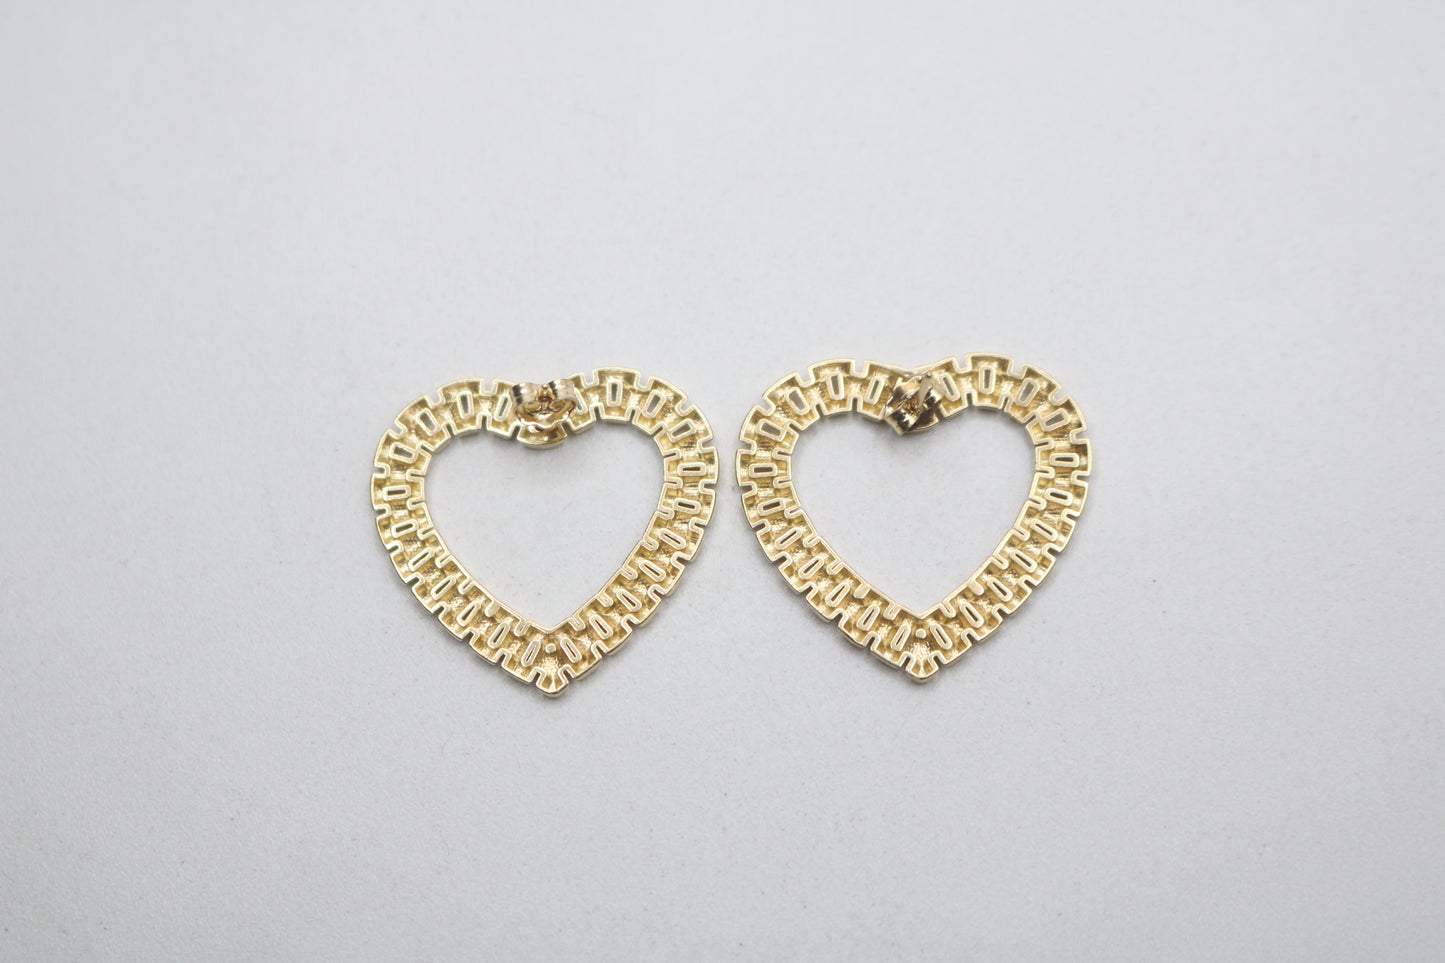 10K Yellow Gold Heart Shaped Rolex Earrings (6.4 Grams)